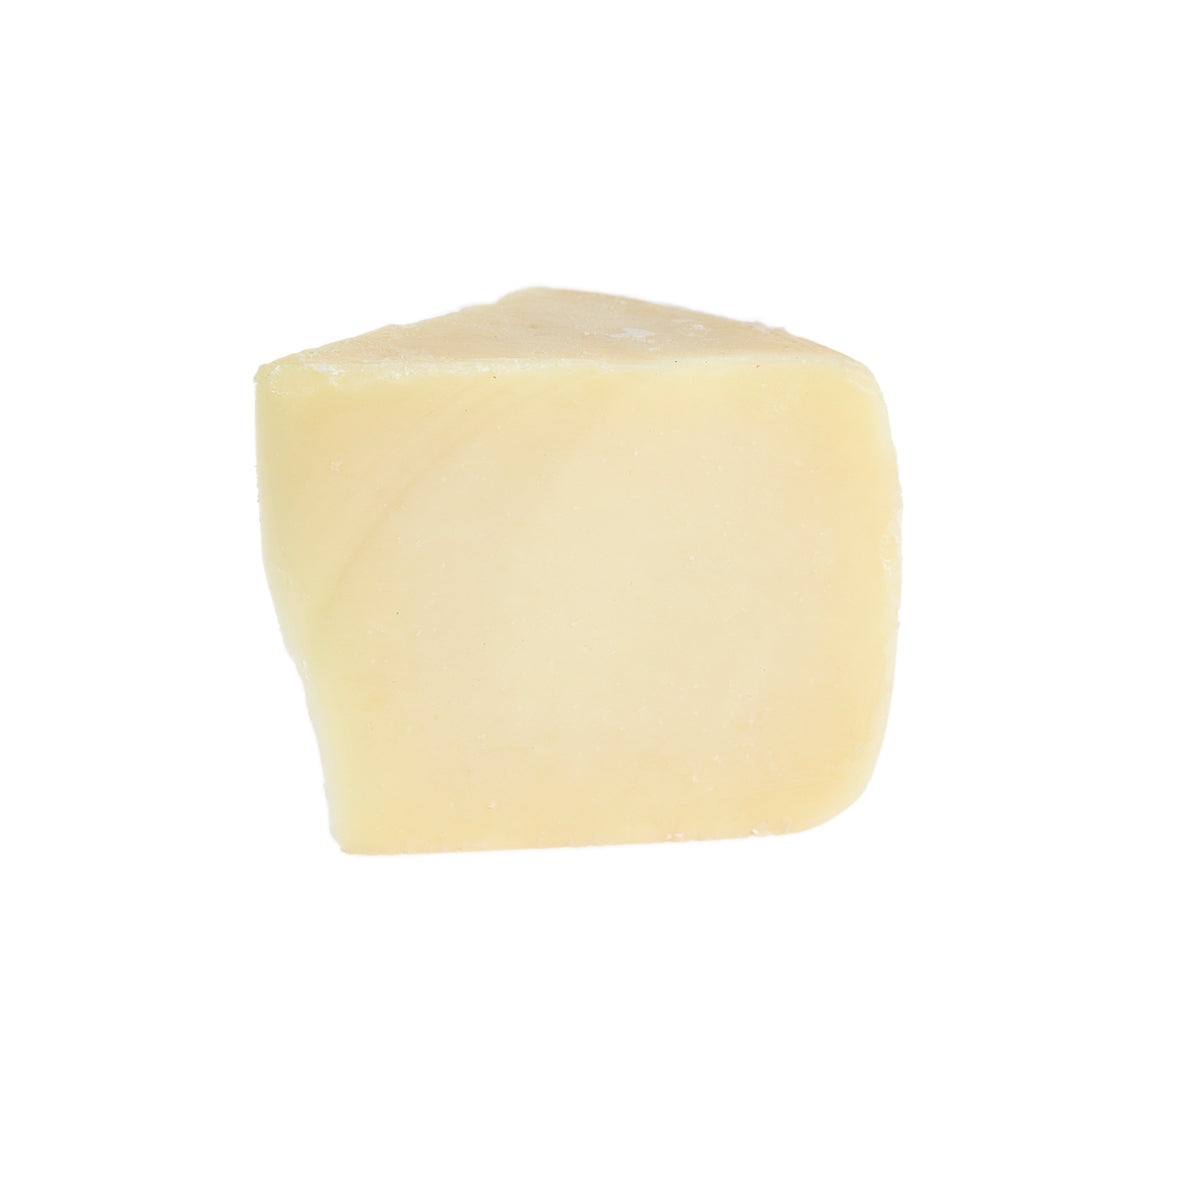 Murray's Cheese Pecorino Fresco Cheese Aged 1 Month